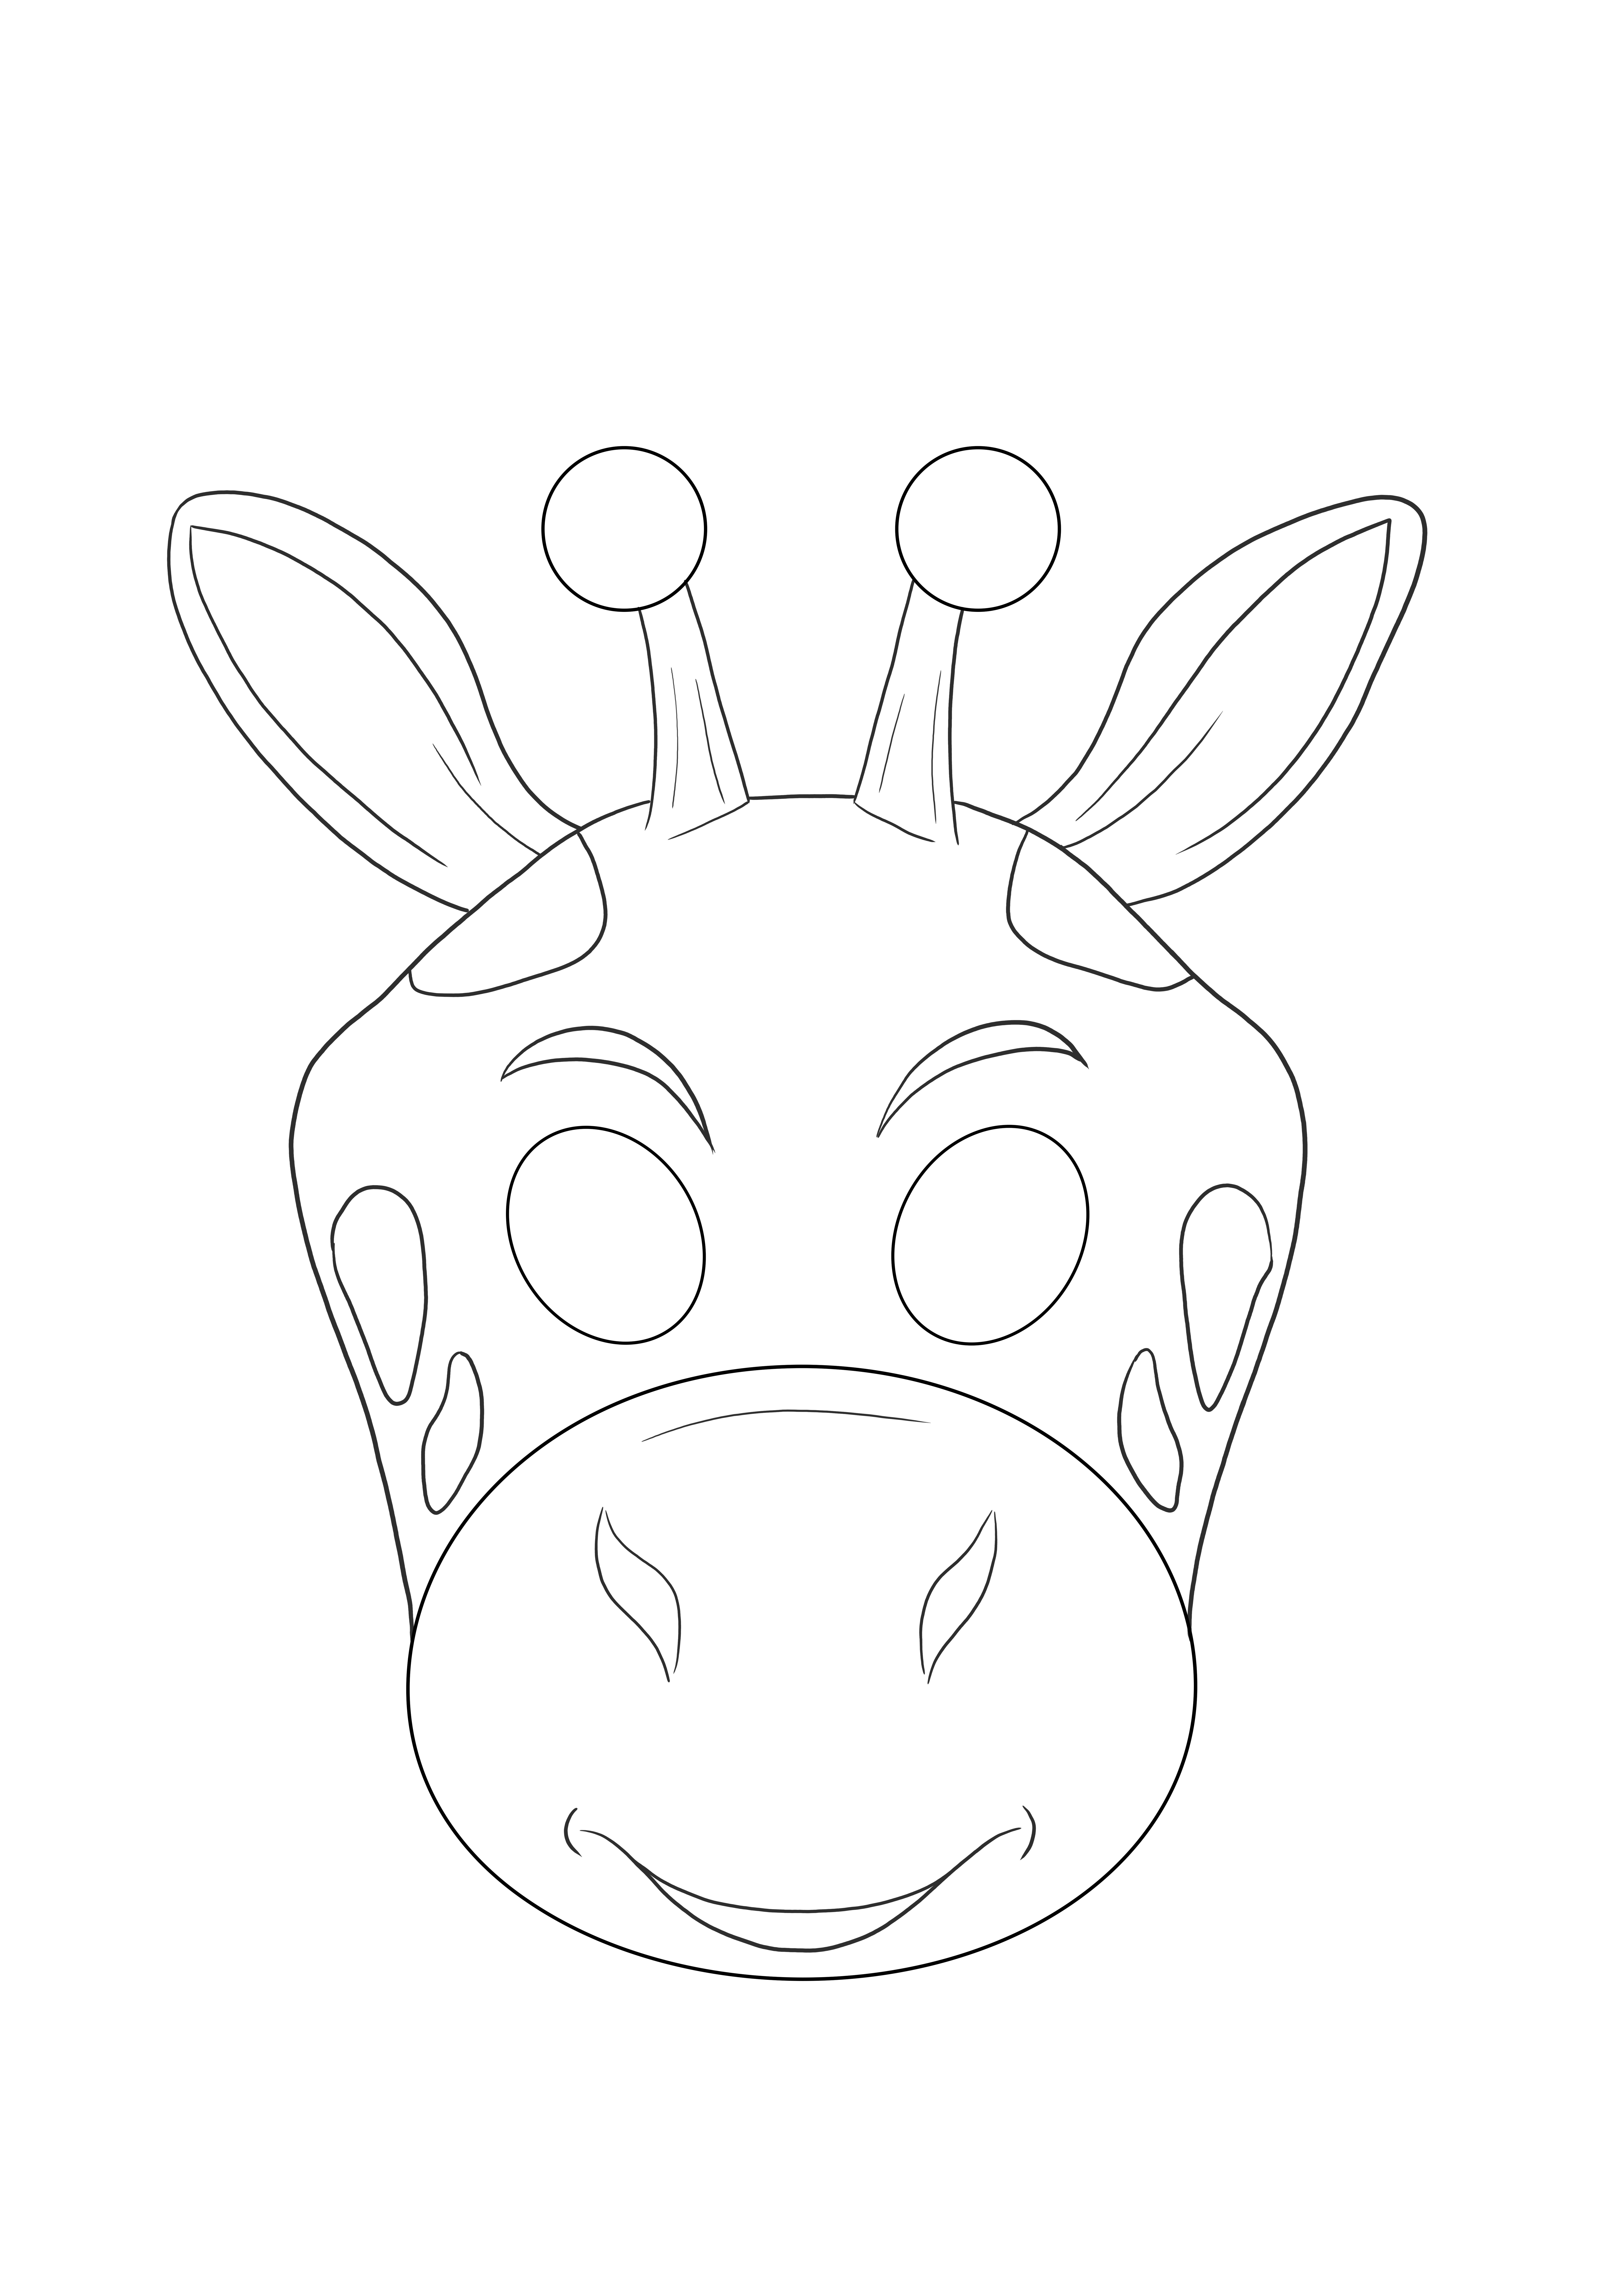 Máscara de jirafa simplemente para imprimir o guardar para que los niños la coloreen más adelante